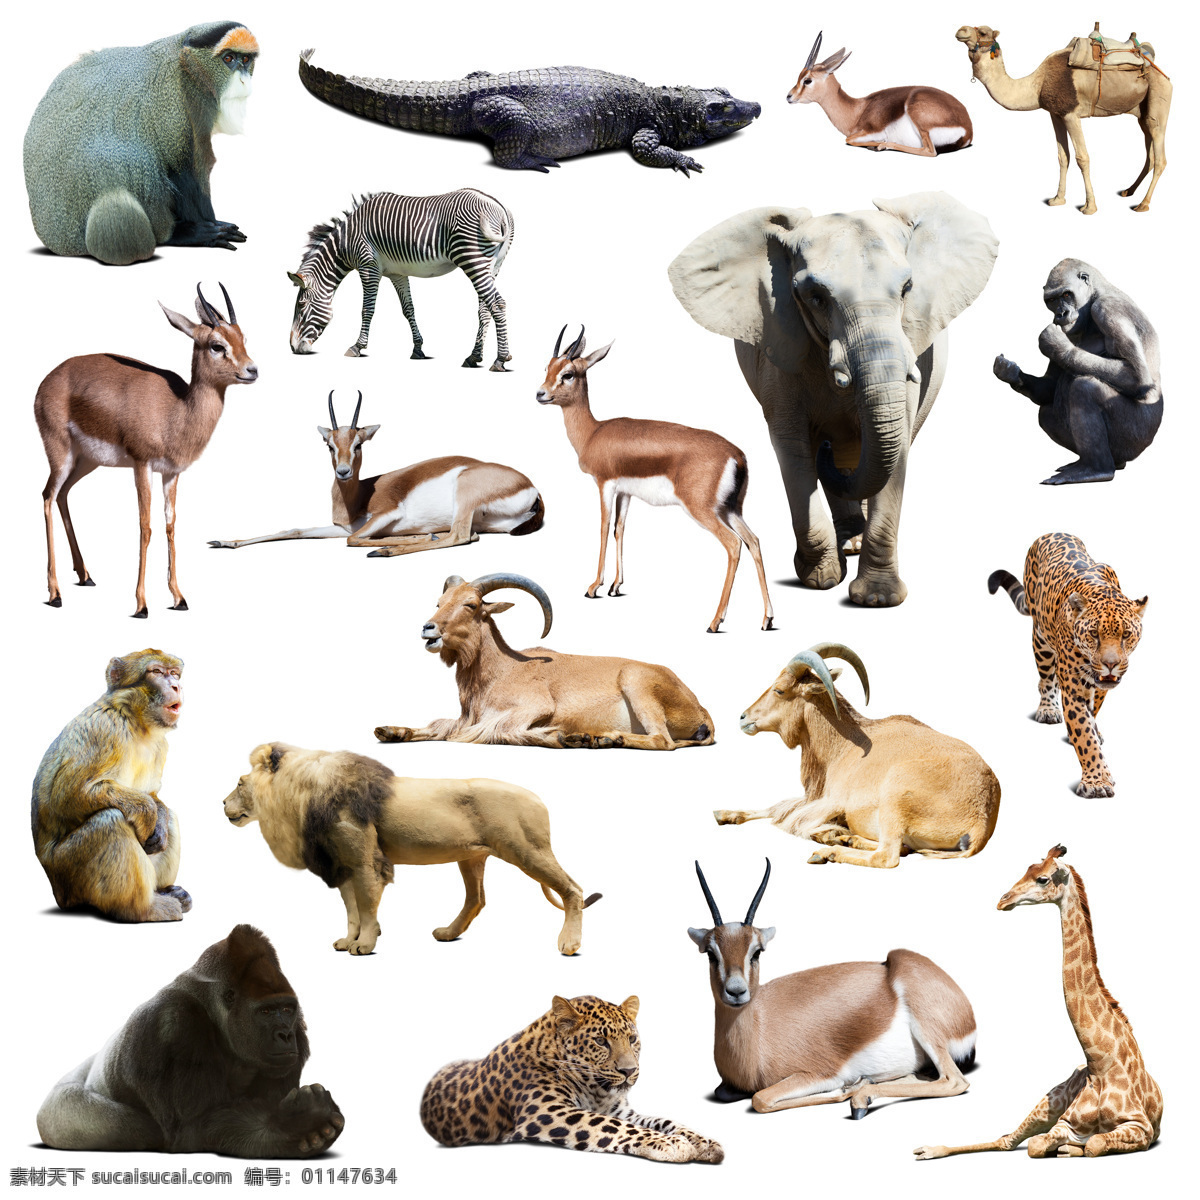 野生动物 野生动物摄影 狮子 豹子 猩猩 羚羊 长颈鹿大象 猴子 鳄鱼 斑马 动物世界 陆地动物 生物世界